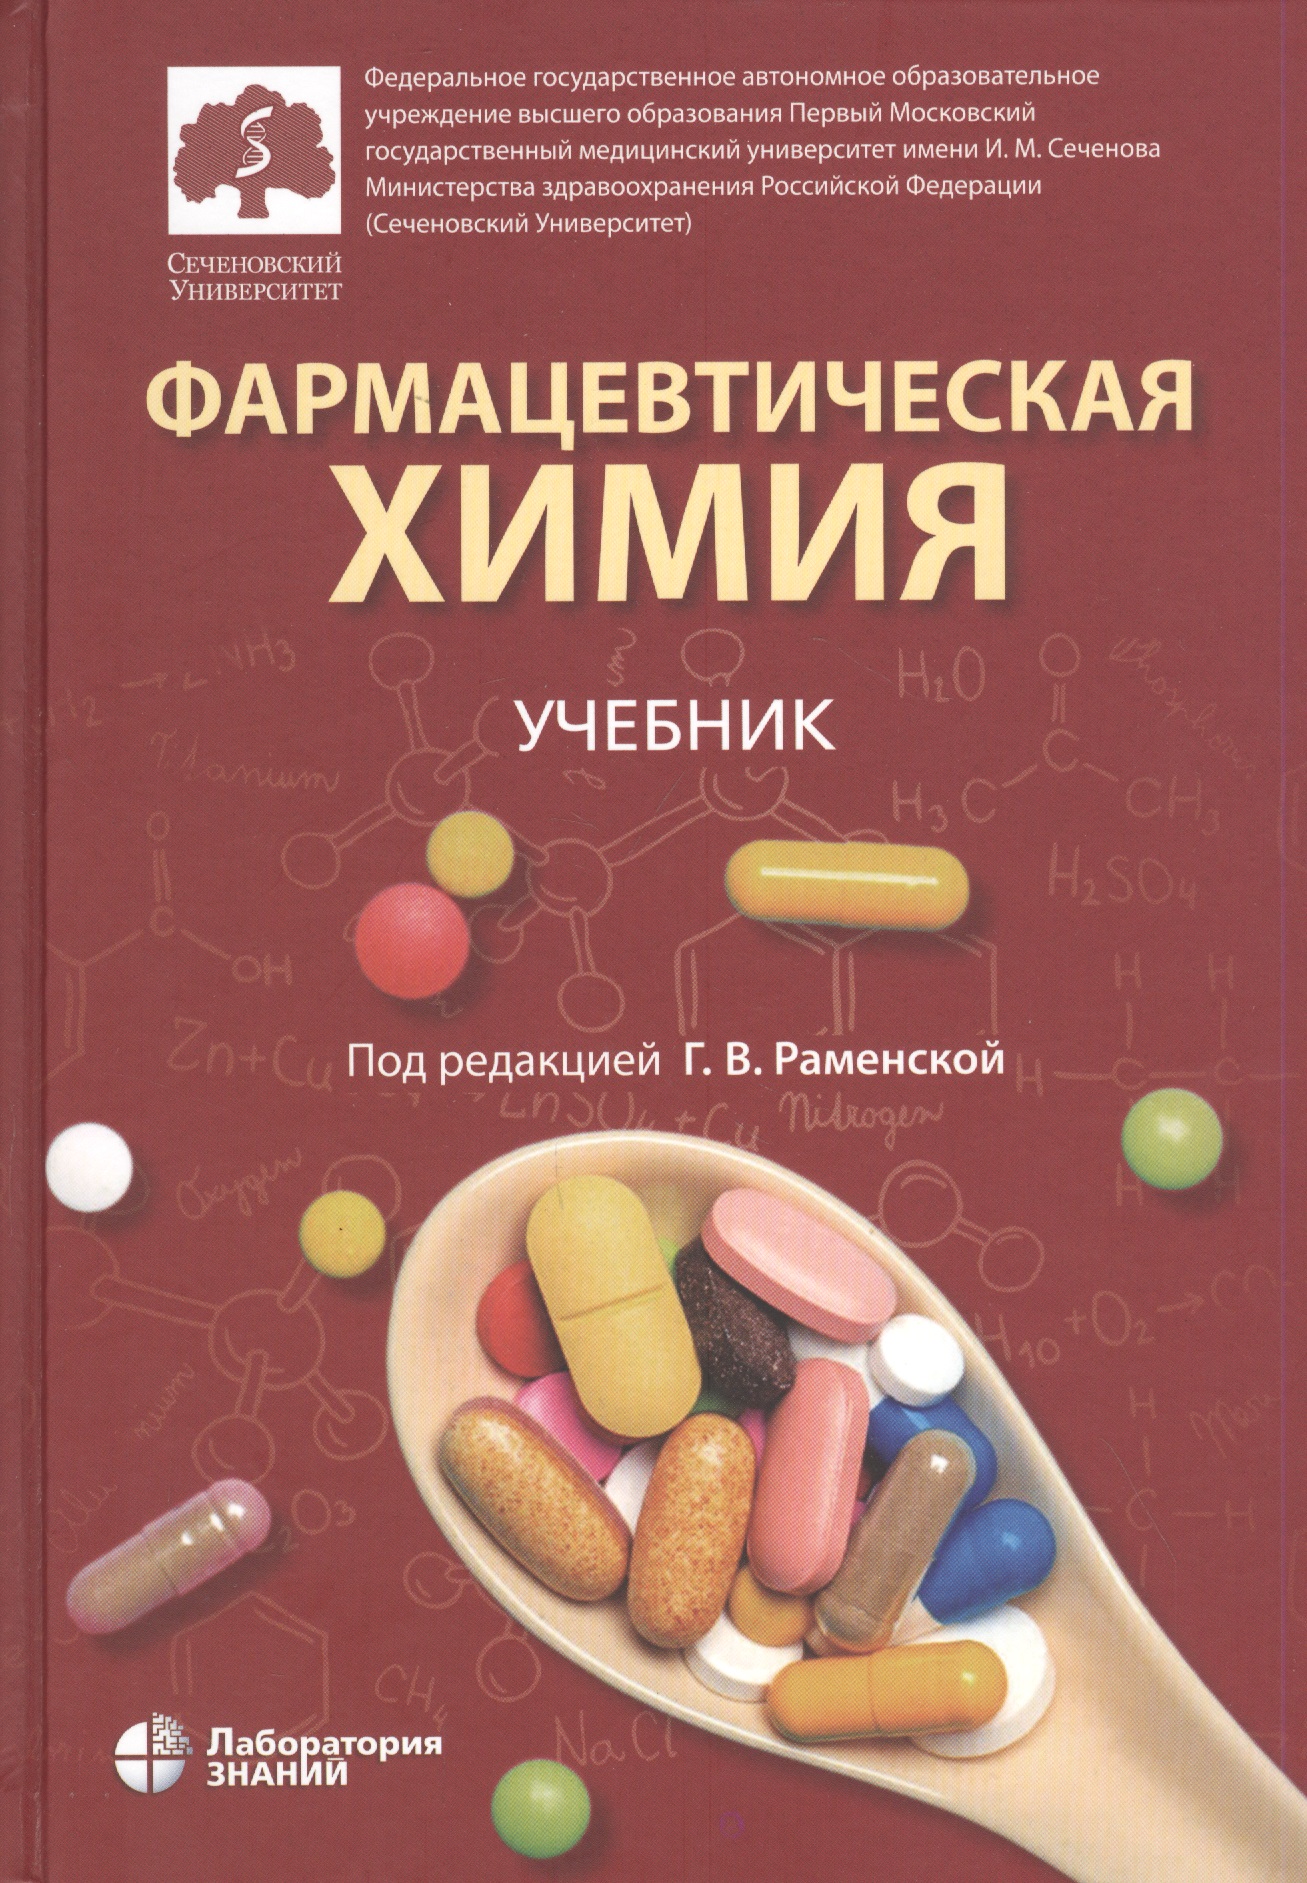 Фармацевтическая химия. Учебник раменская галина владиславовна фармацевтическая химия учебник